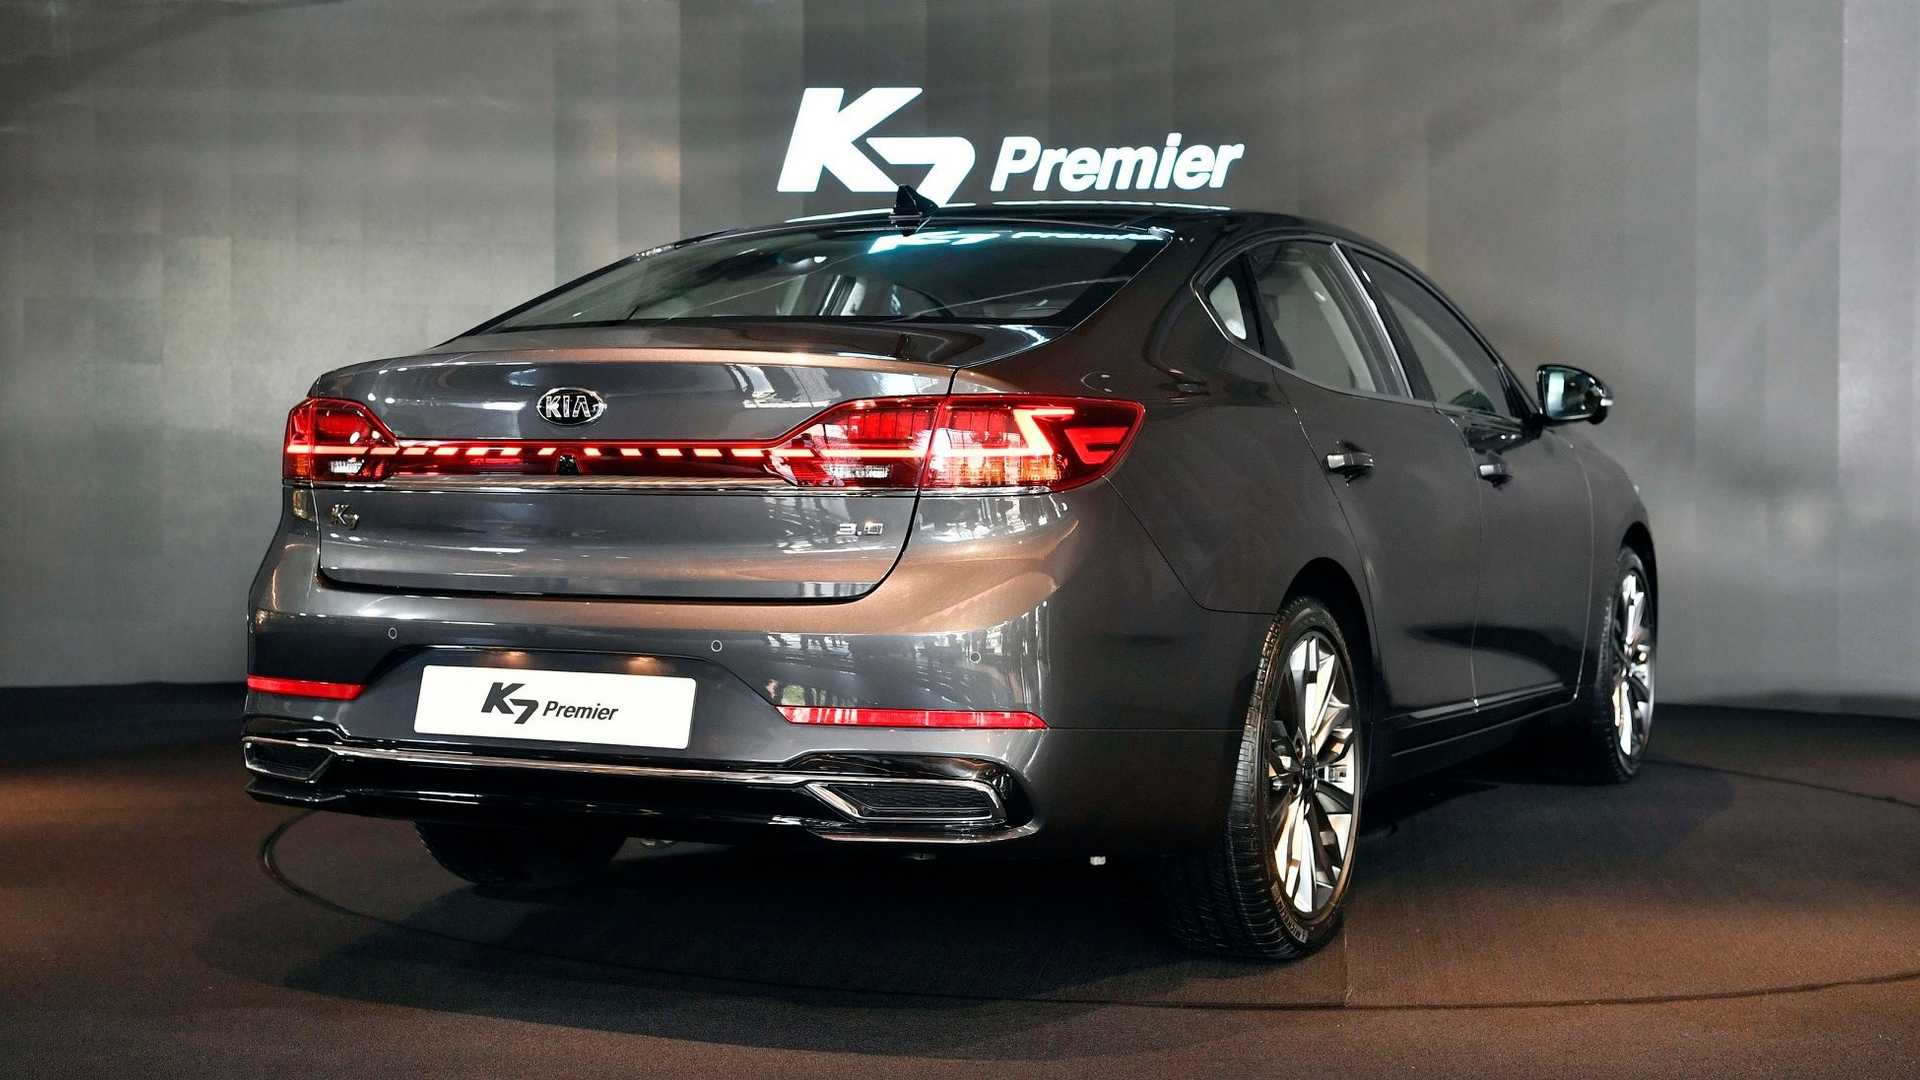 2020 kia k7 facelift - کیا کادنزا 2020 فیس لیفت معرفی شد. Kia Cadenza 2020